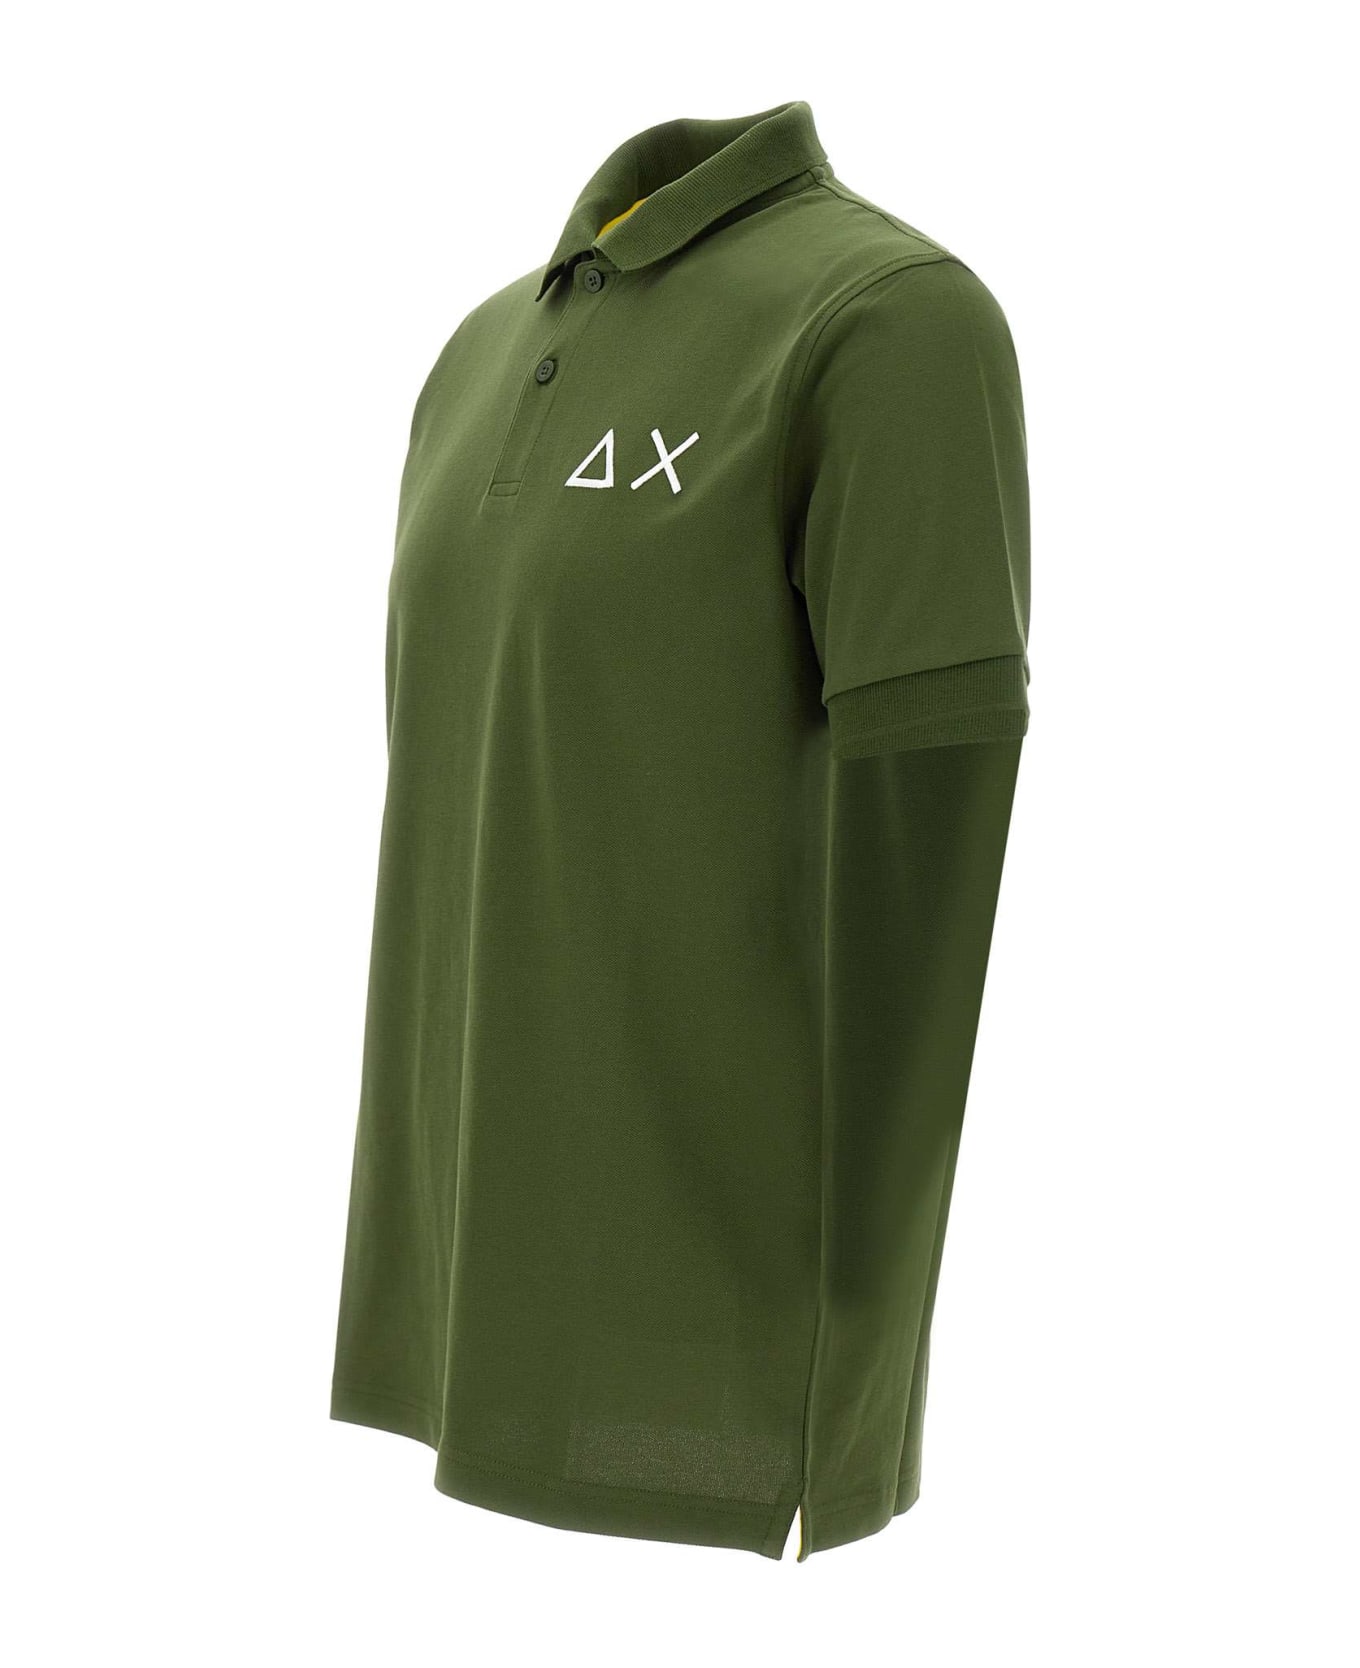 Sun 68 "big Logo" Polo Shirt In Cotton - GREEN ポロシャツ